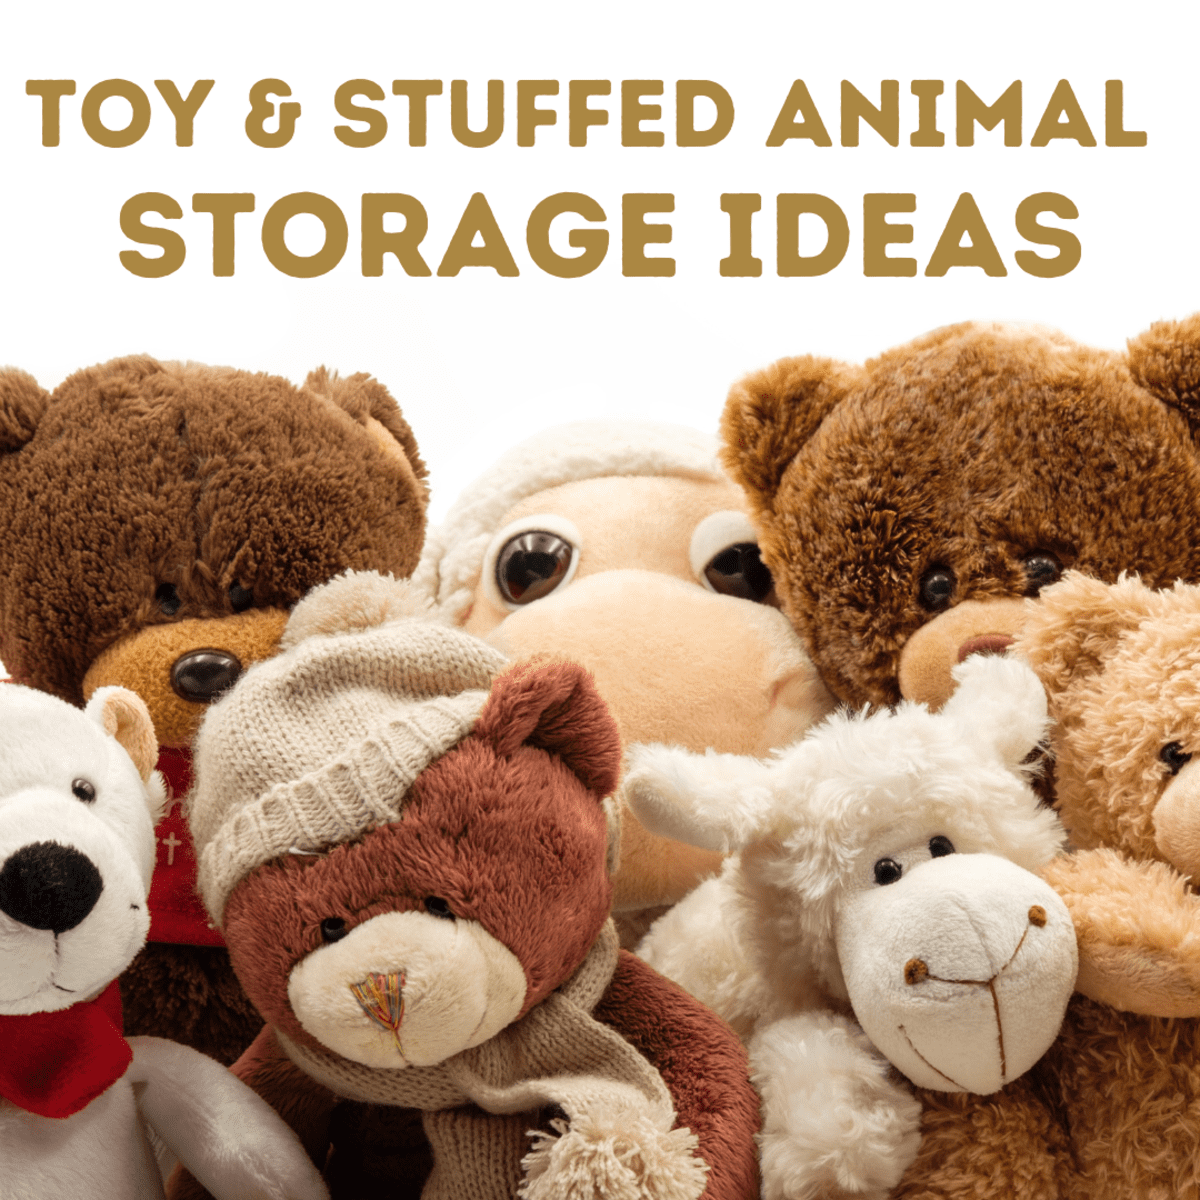 44 Best Toy Storage Ideas that Kids Will Love  Barbie storage, Doll  clothes storage ideas, Doll storage